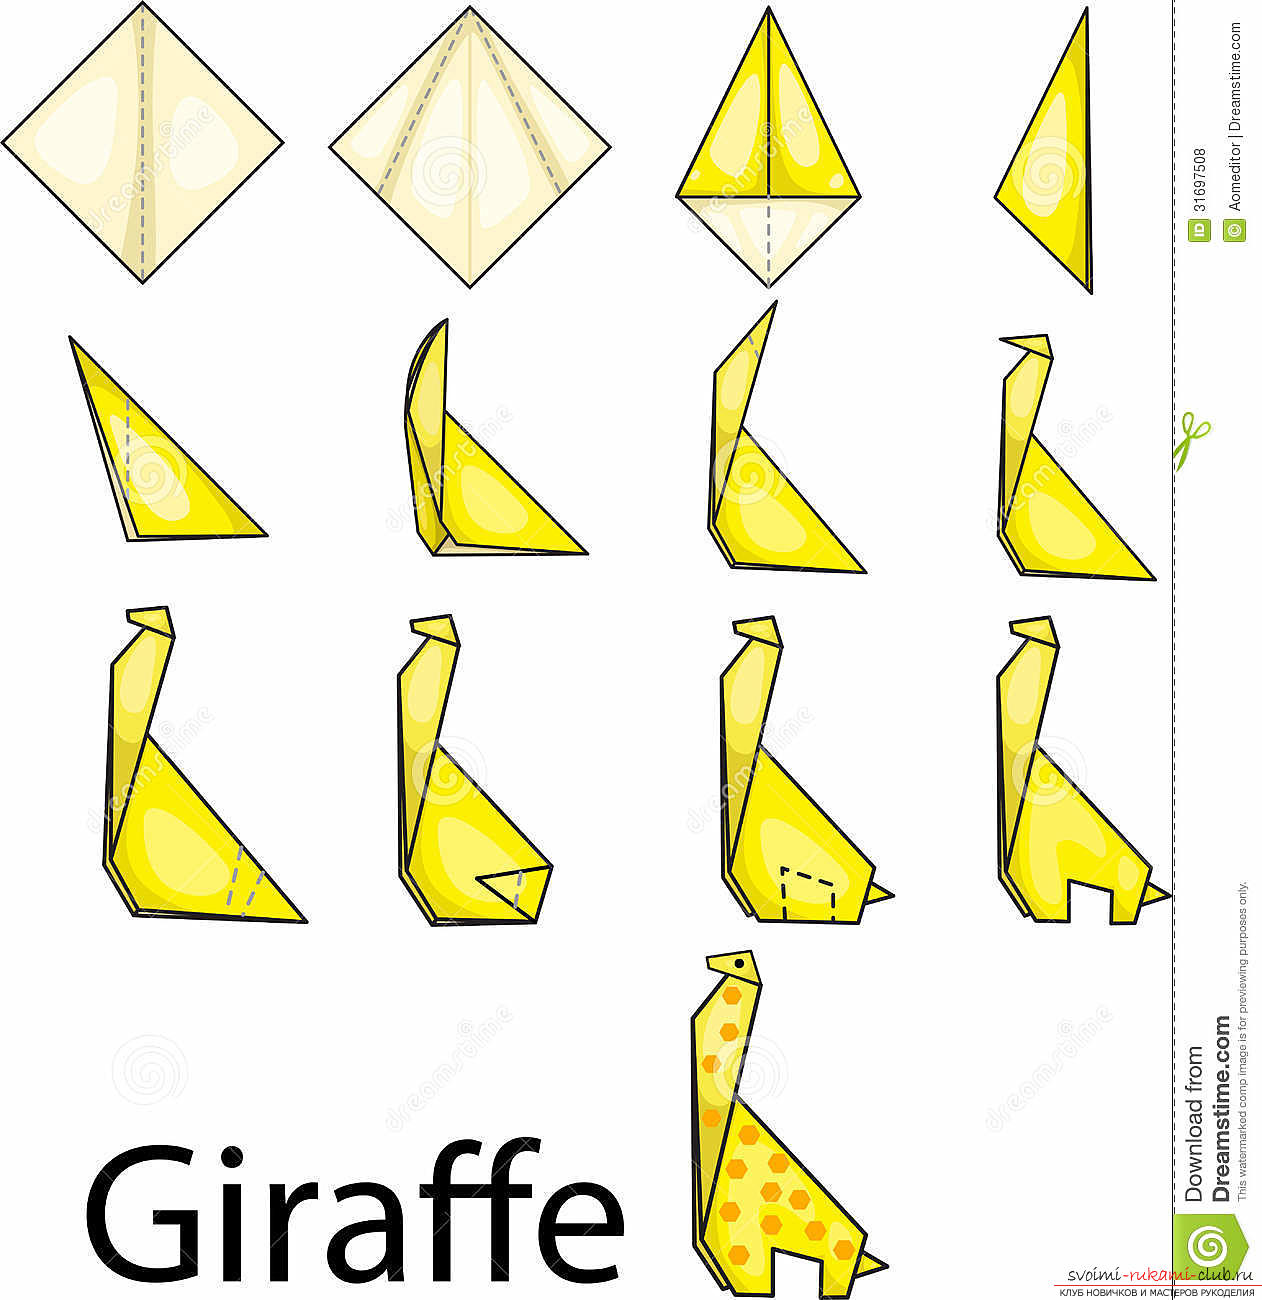 Как сделать жирафа в технике оригами из бумаги, вы узнаете из материала этой статьи